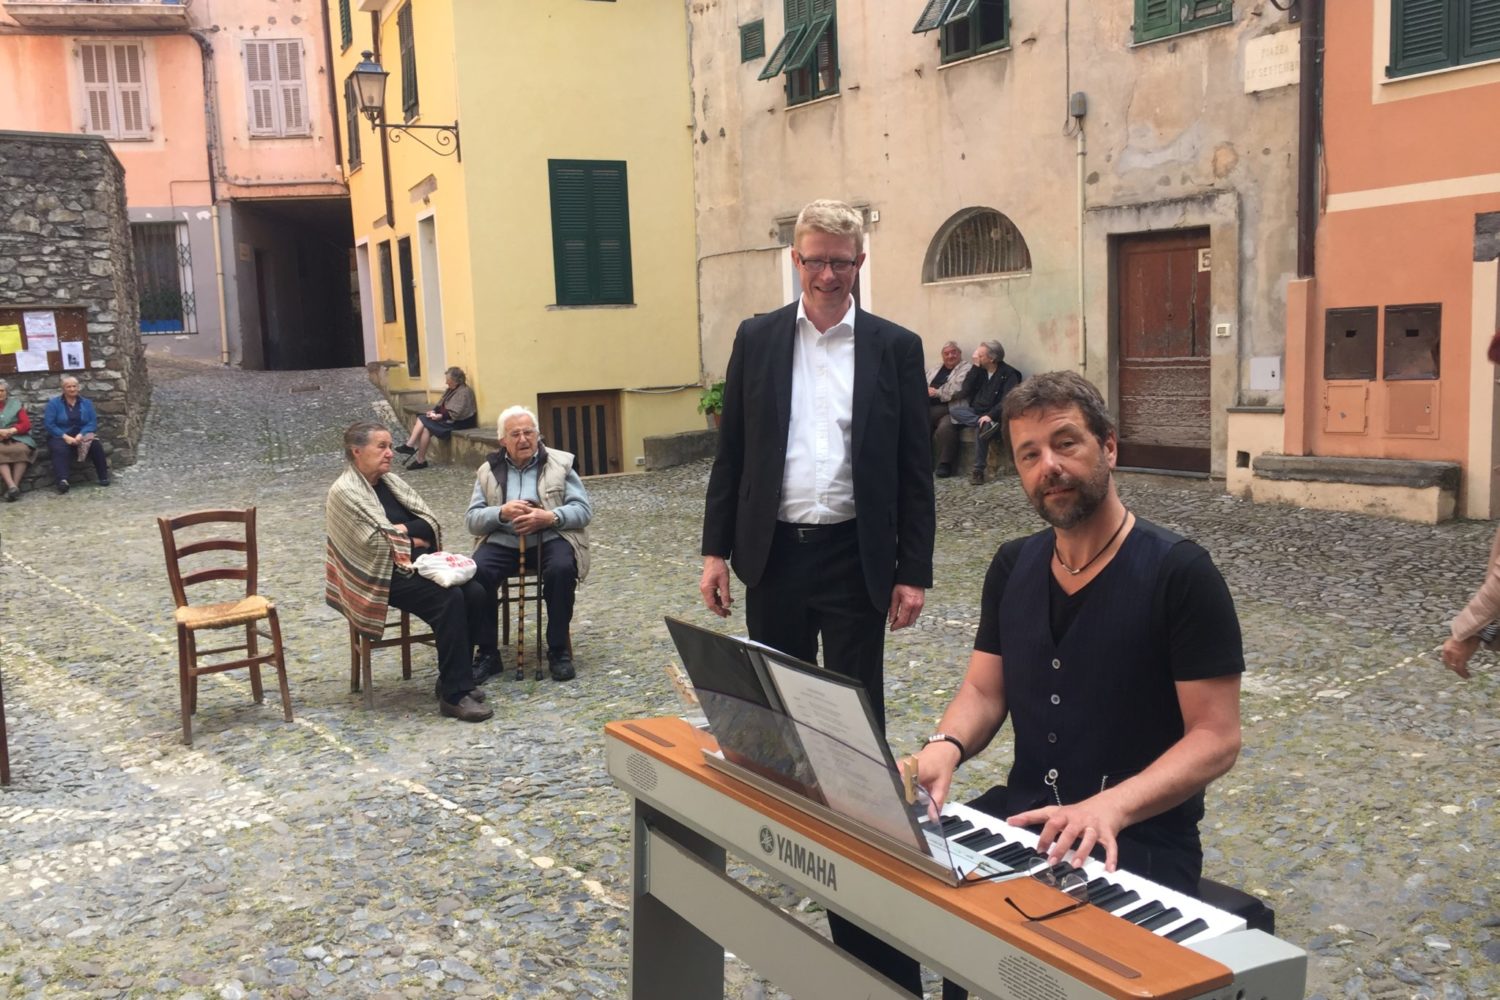 mand i jakkesæt synger med klaver på torv i Italien